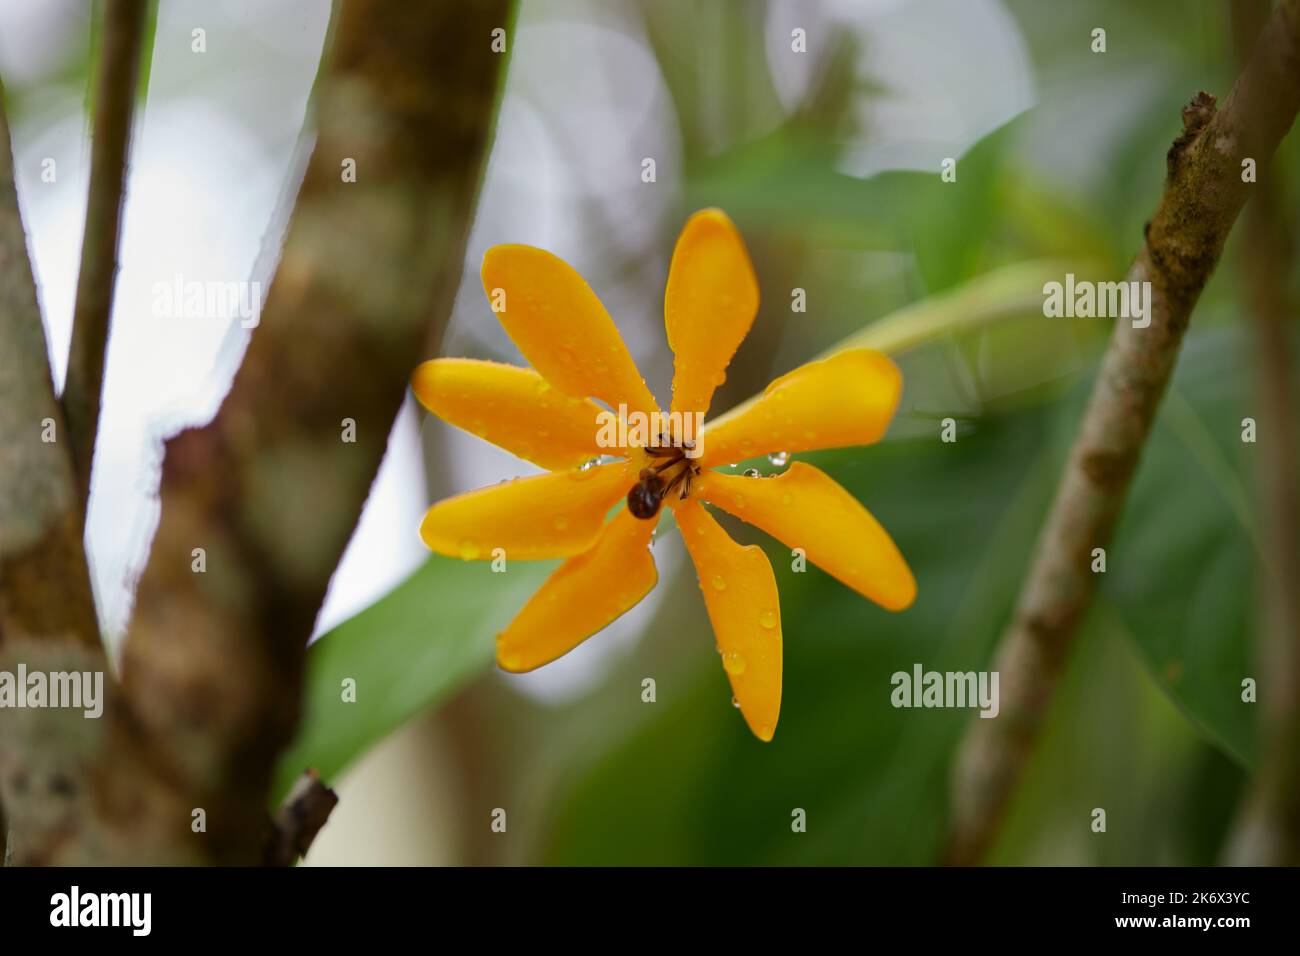 Fresh Kedah gardenia or Golden gardenia flower in bloom with raindrops Stock Photo